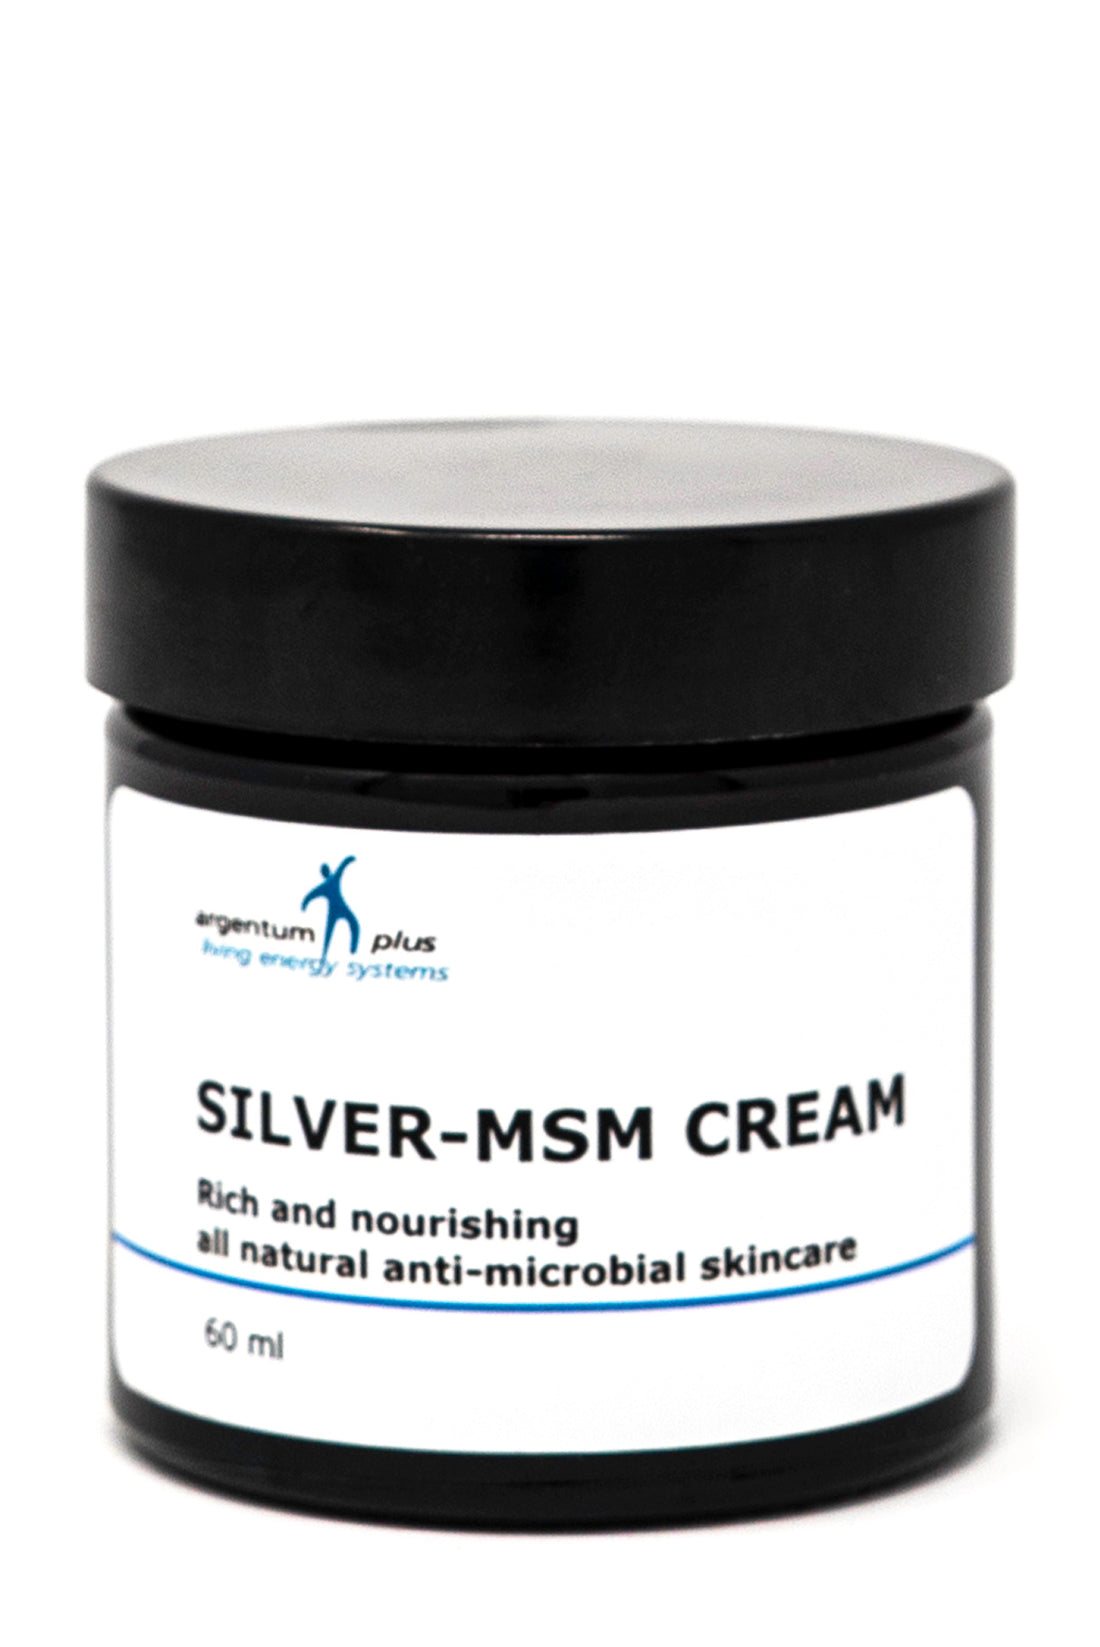 Argentum Plus Silver-MSM Cream